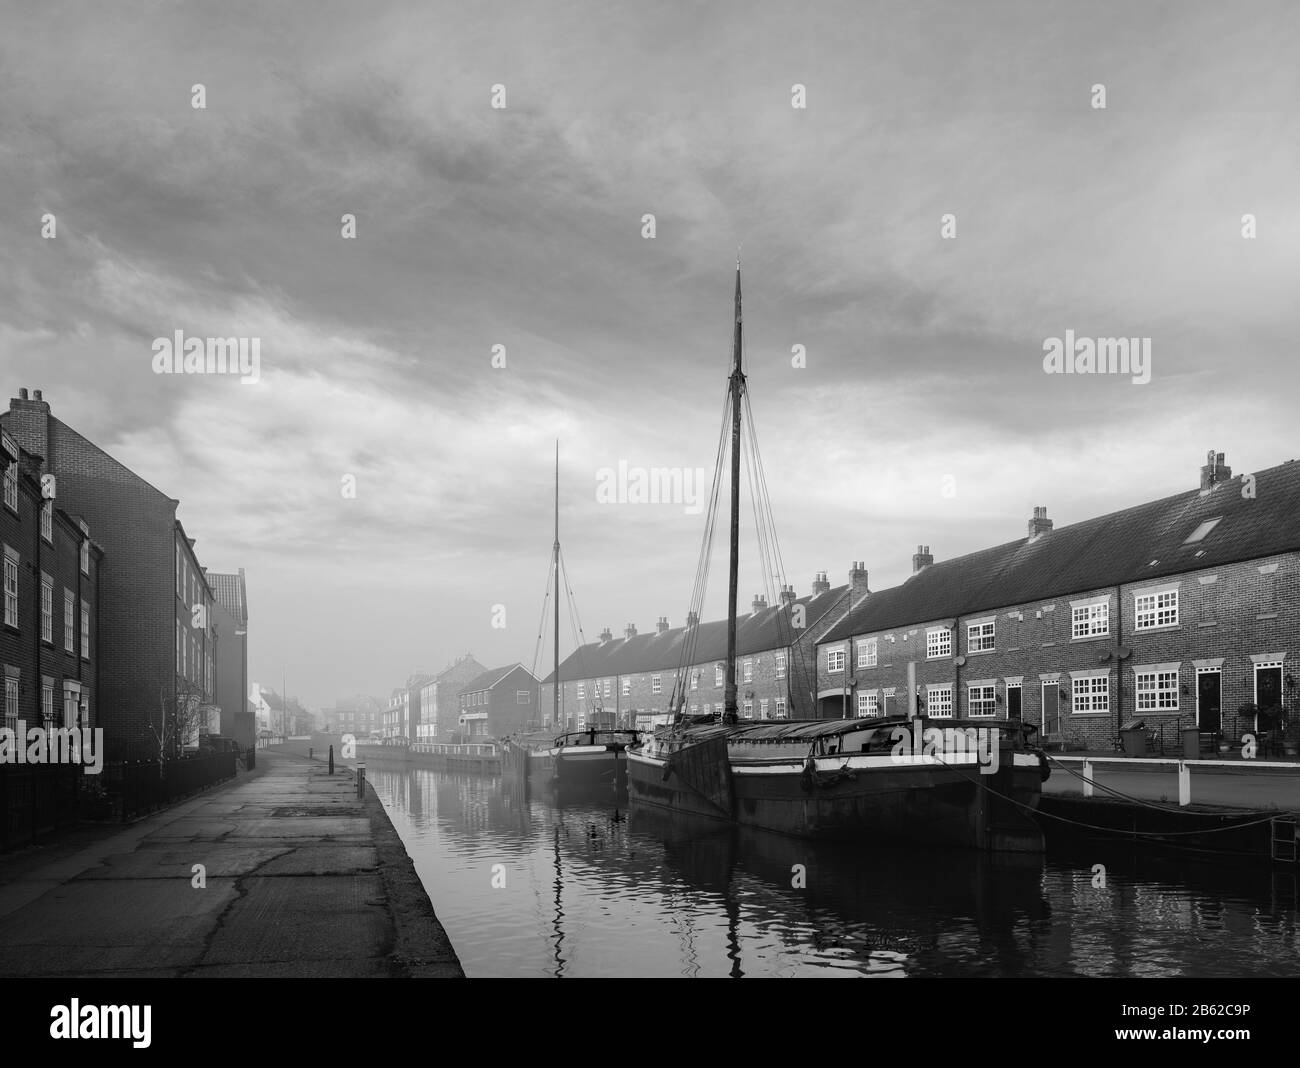 Restaurierte Lastkähne moorierten am beck (Kanal) an einem ruhigen, hellen Morgen im Frühjahr, der von Bürgerhäusern in Beverley, Yorkshire, Großbritannien, flankiert wurde. Stockfoto